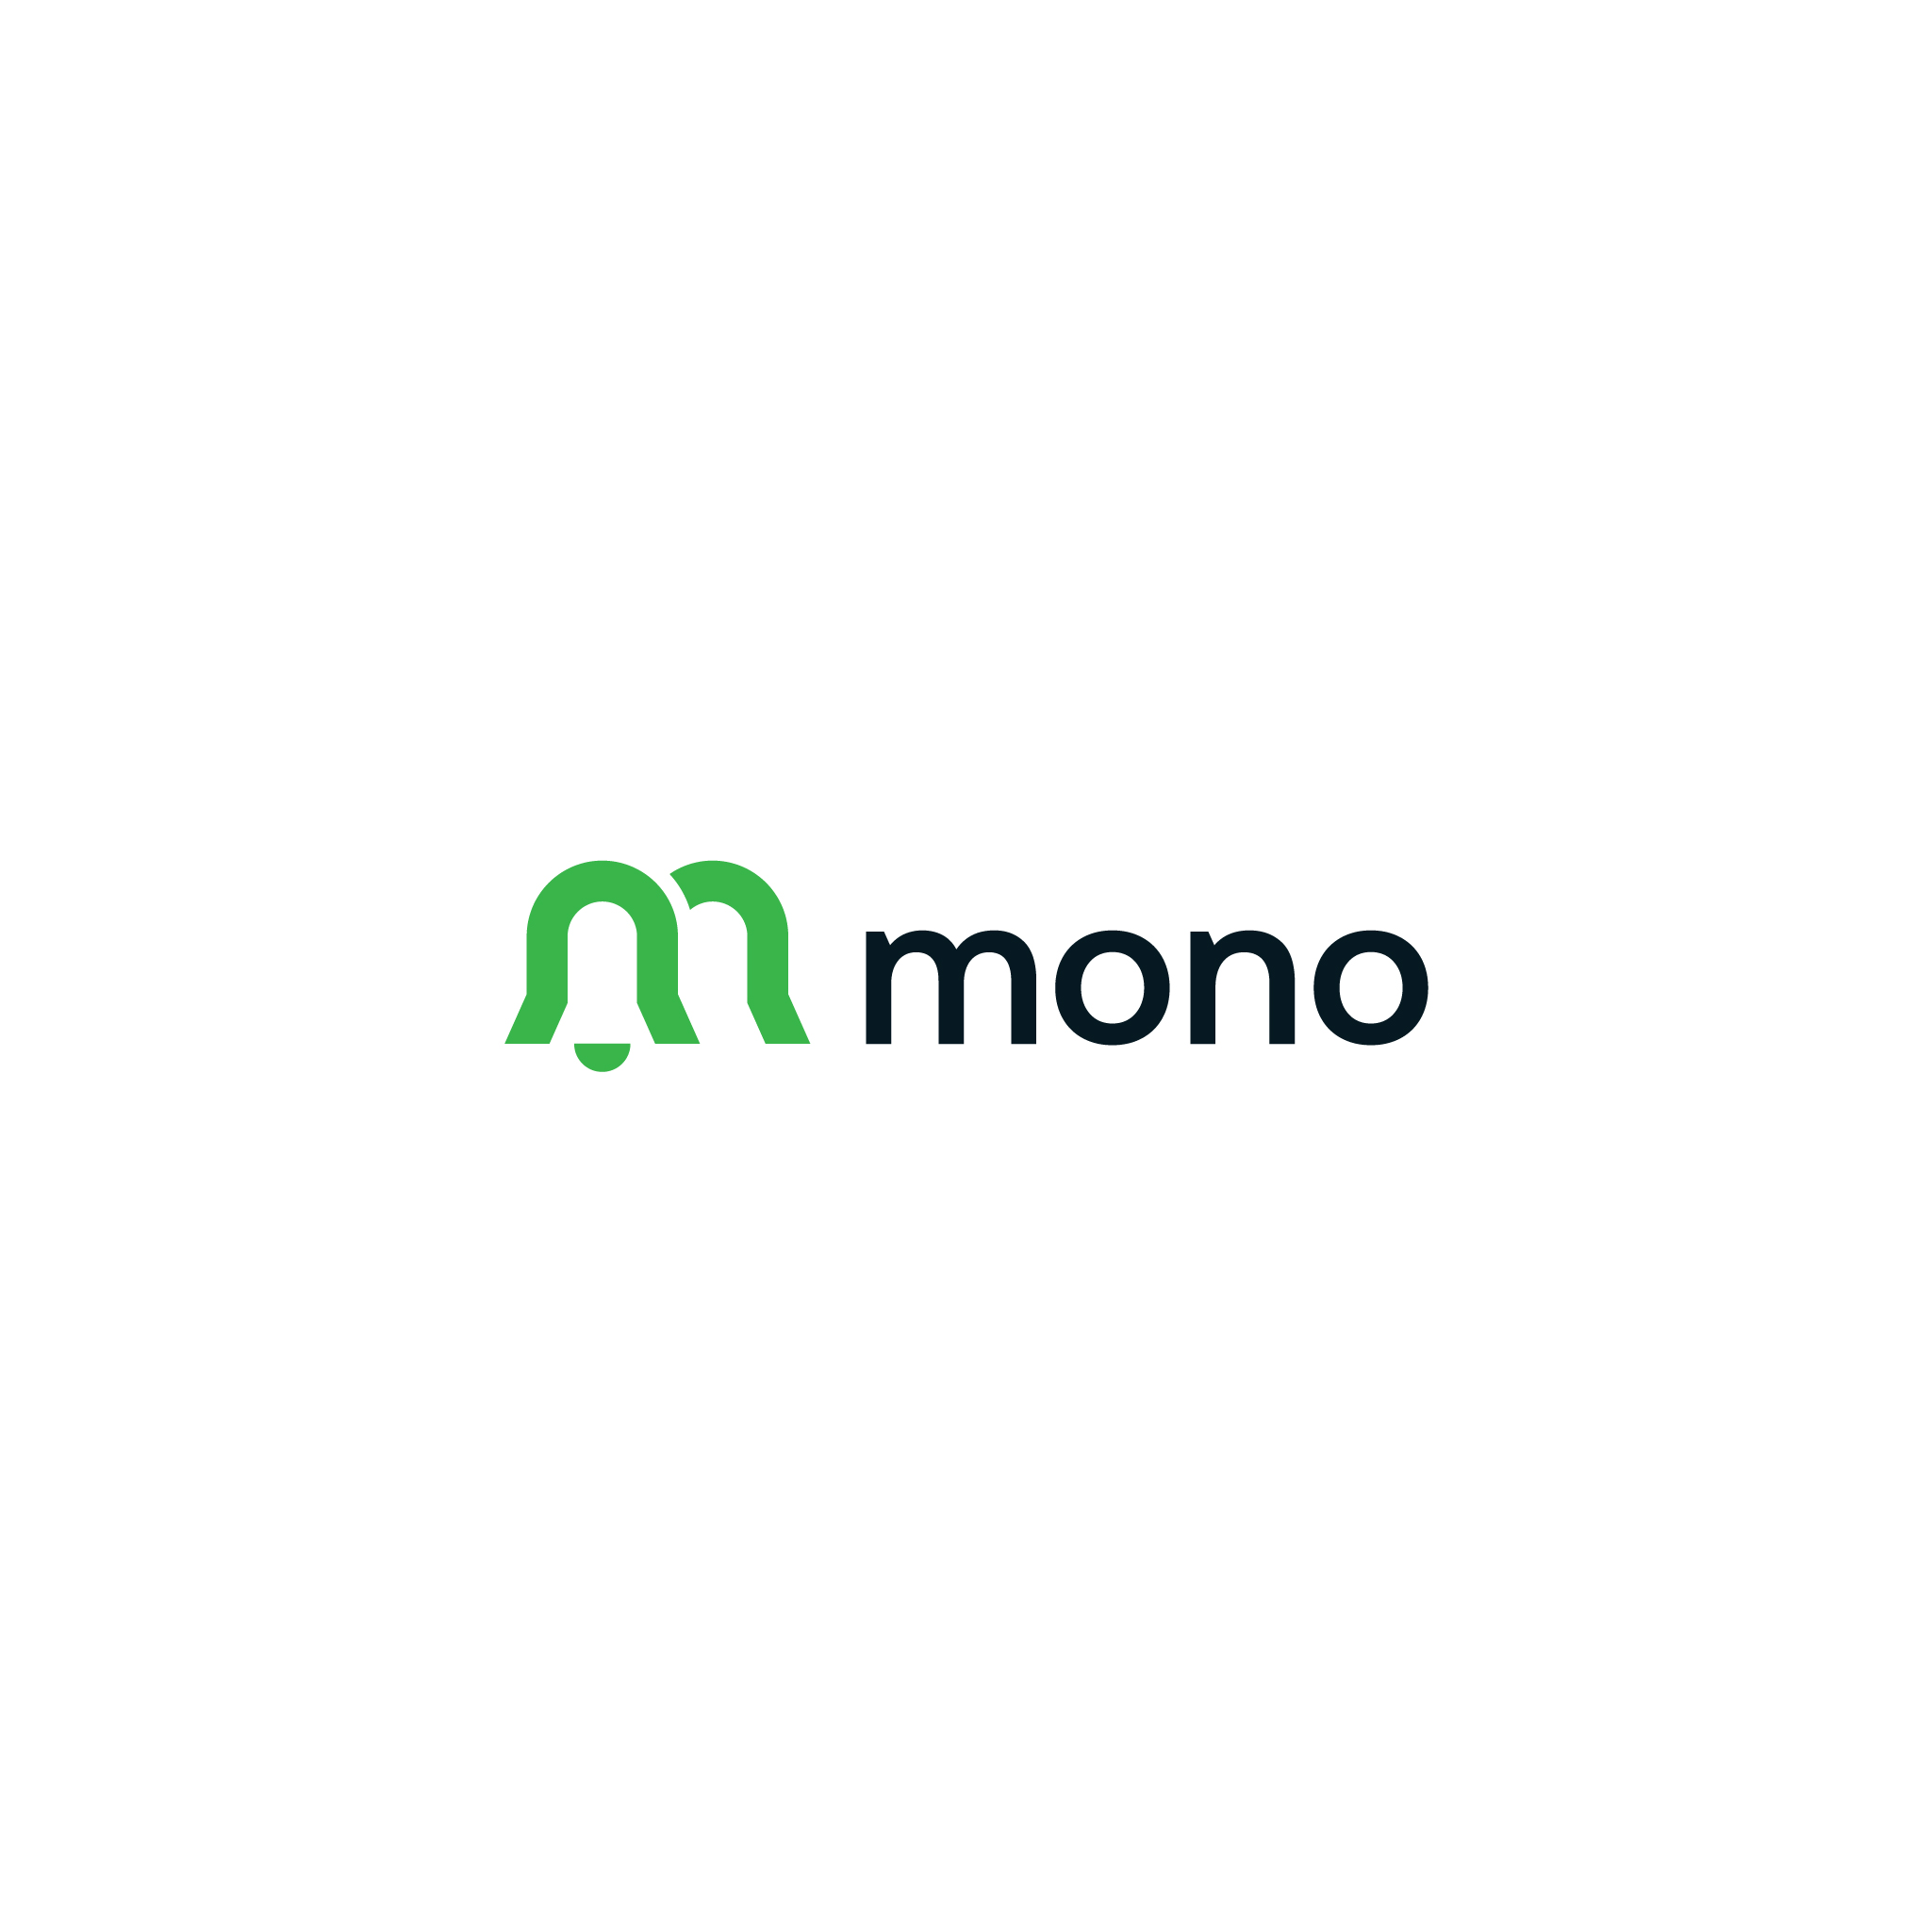 mono_logo_felis-01